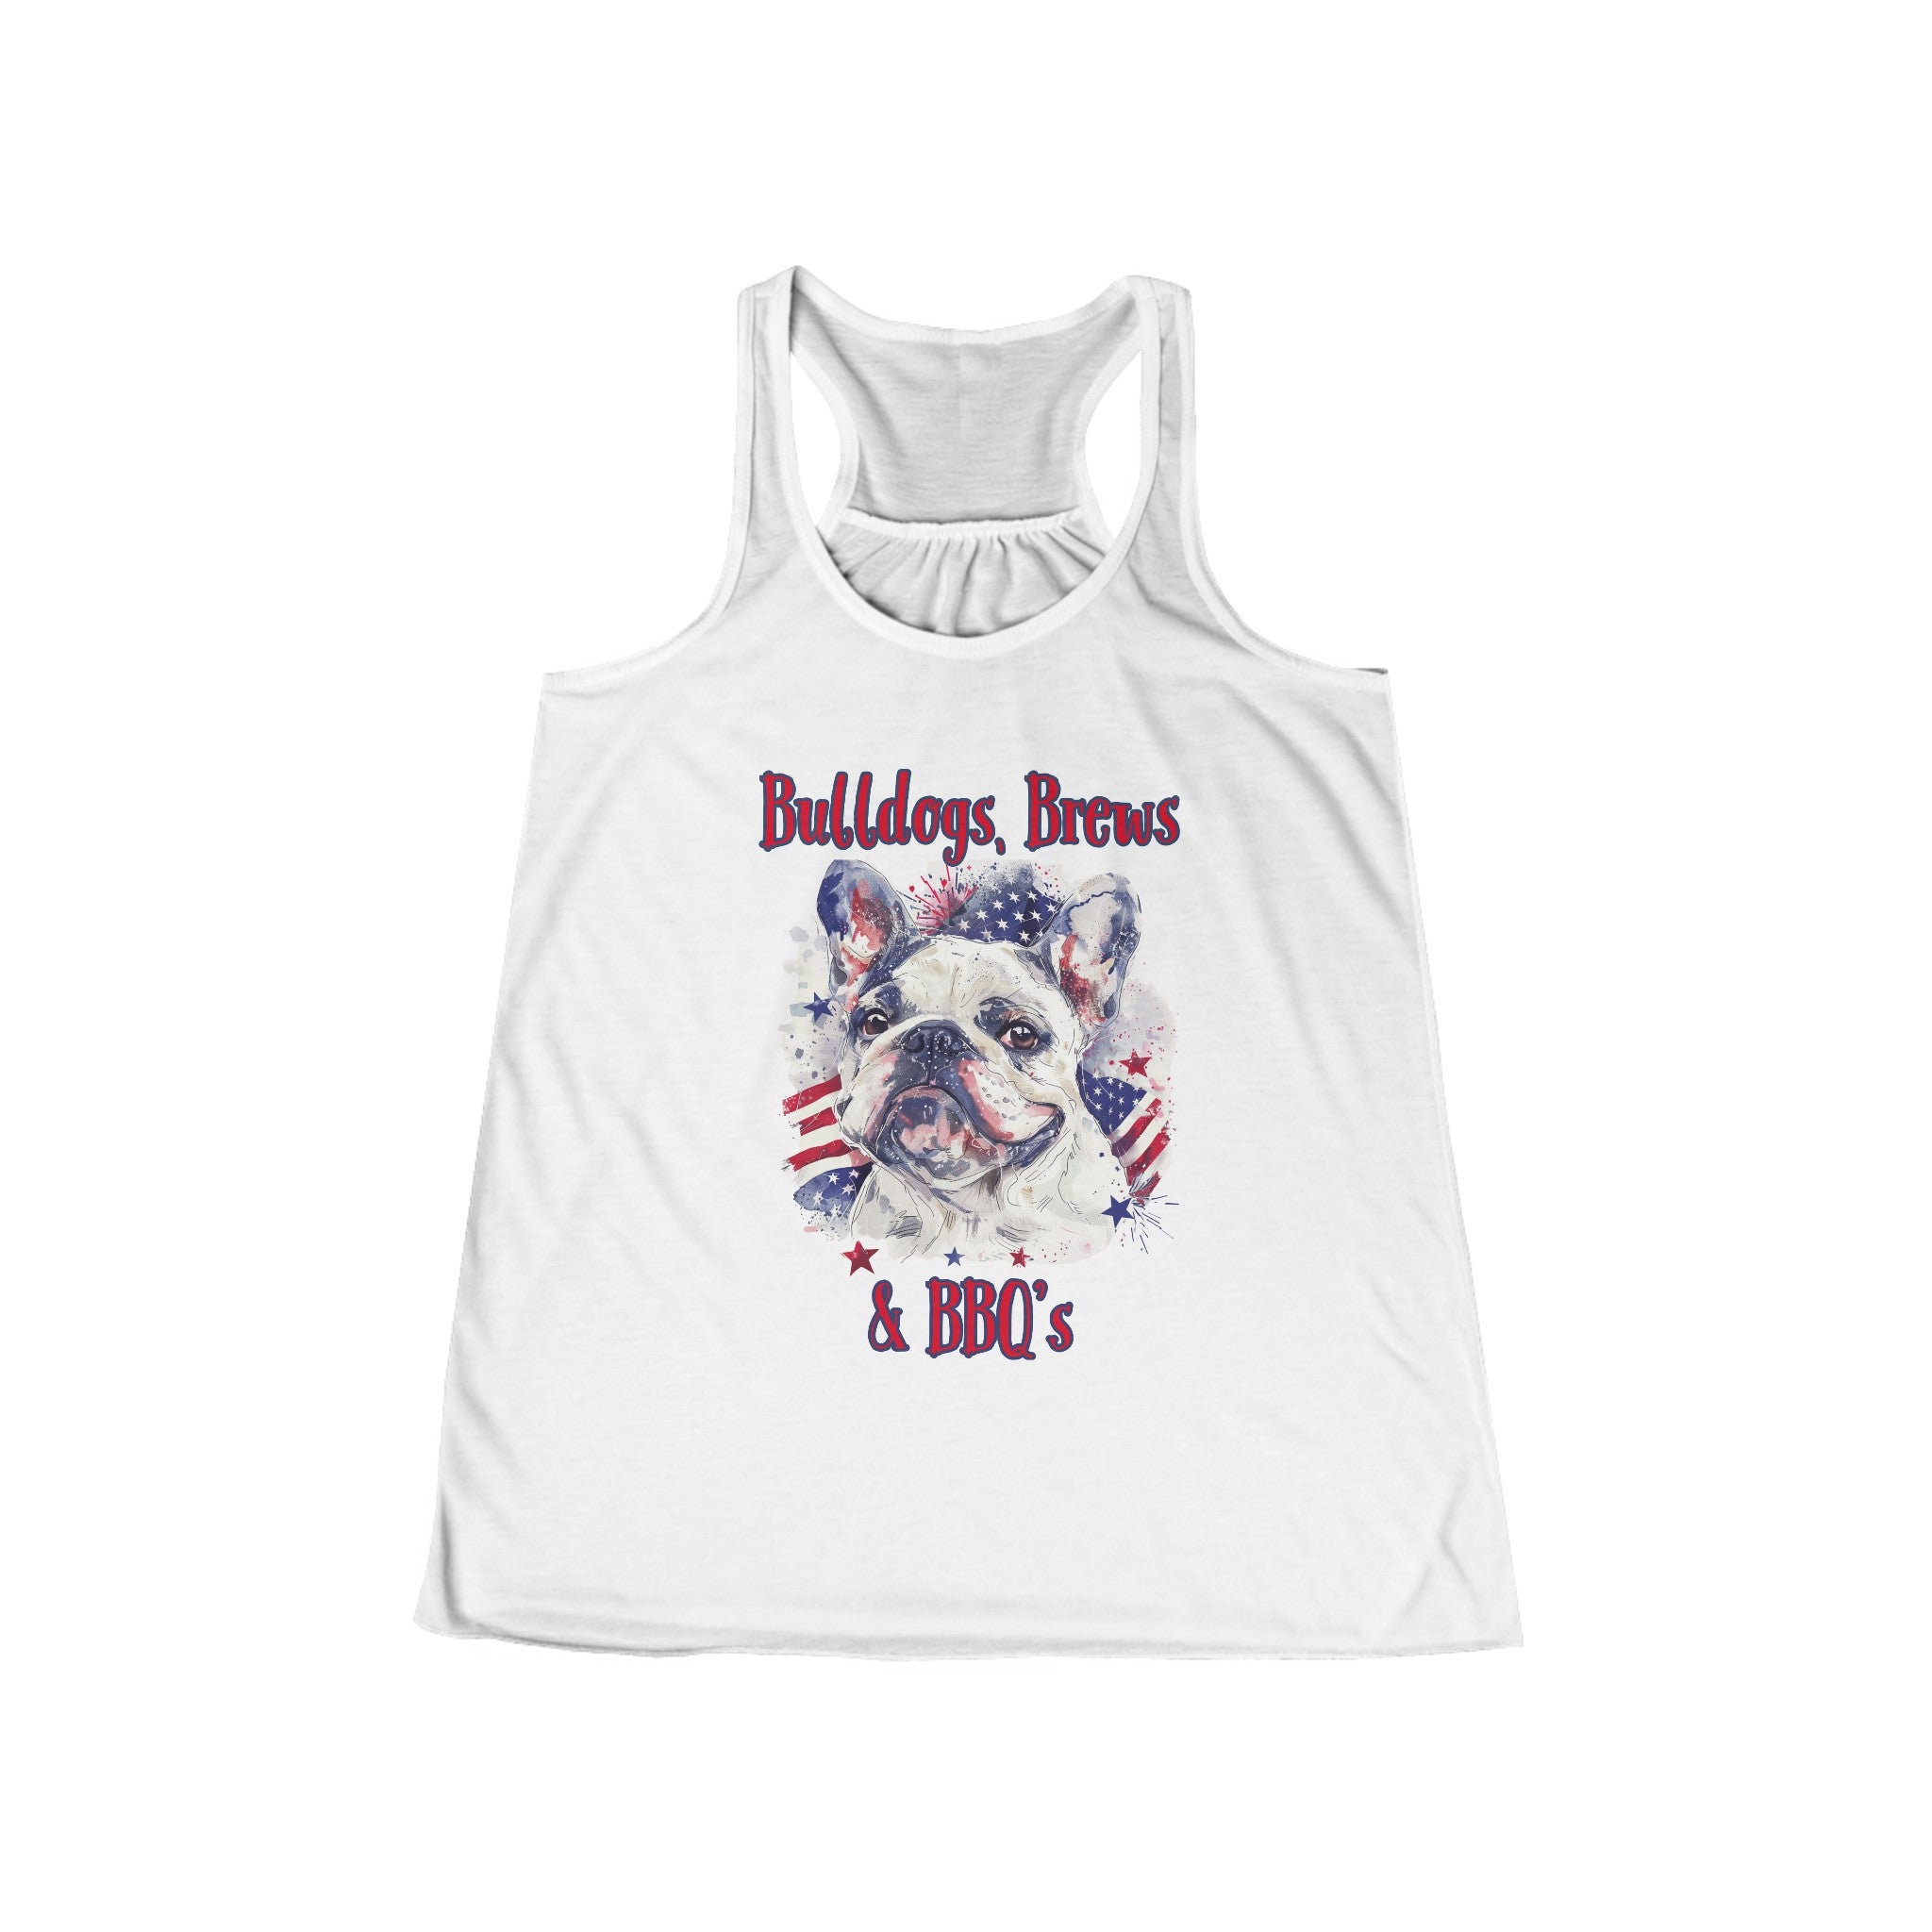 Bulldogs, Brews & BBQ's Women's Flowy Racerback Tank (French)